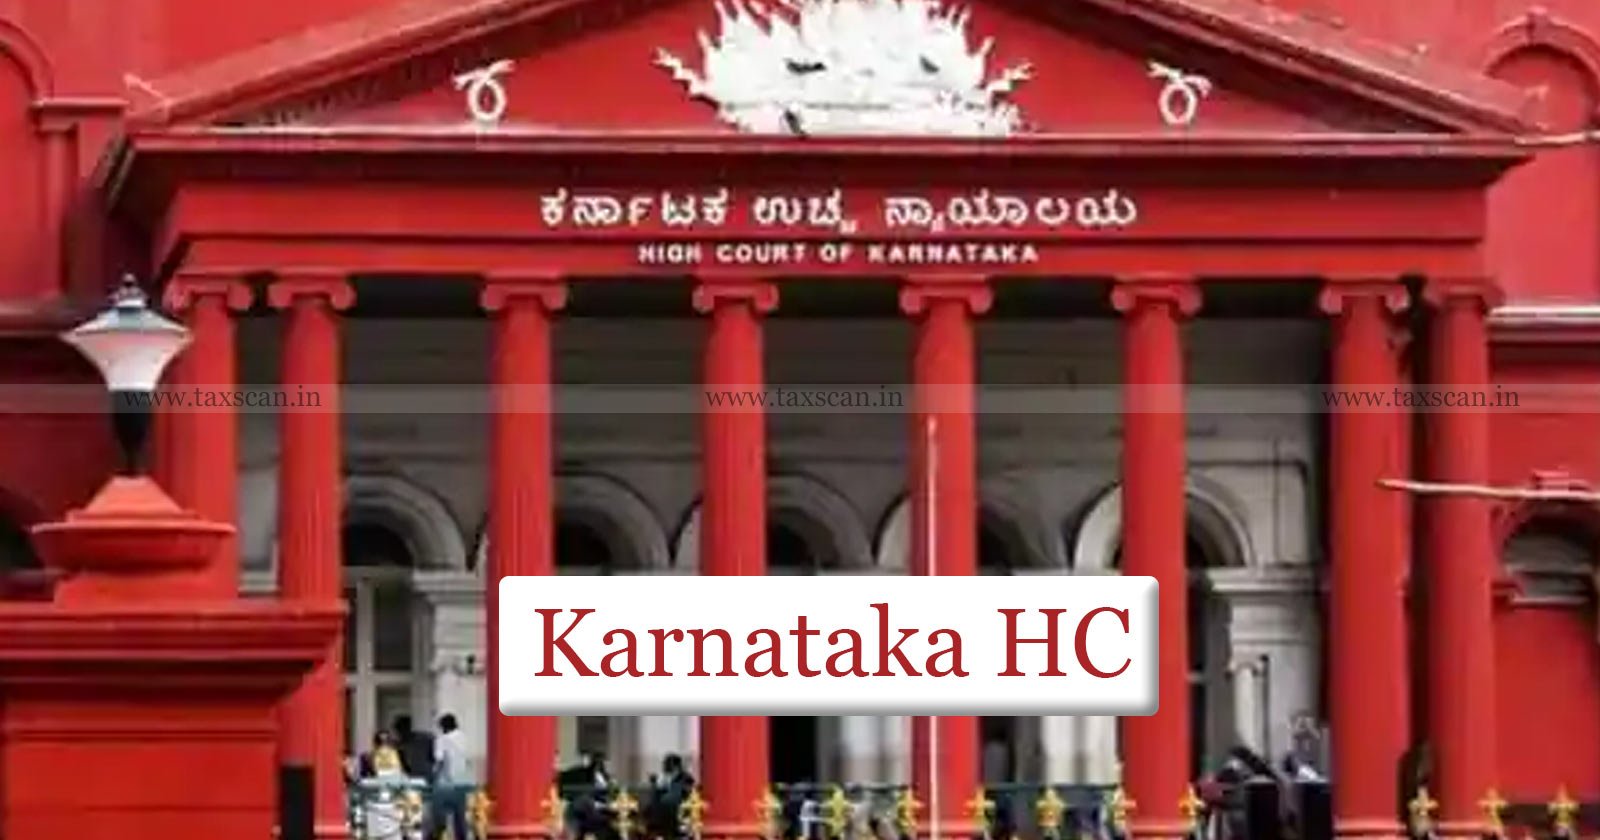 Karnataka HC - ICAI - CA Student - Multiple Courses - CA Studies - taxscan